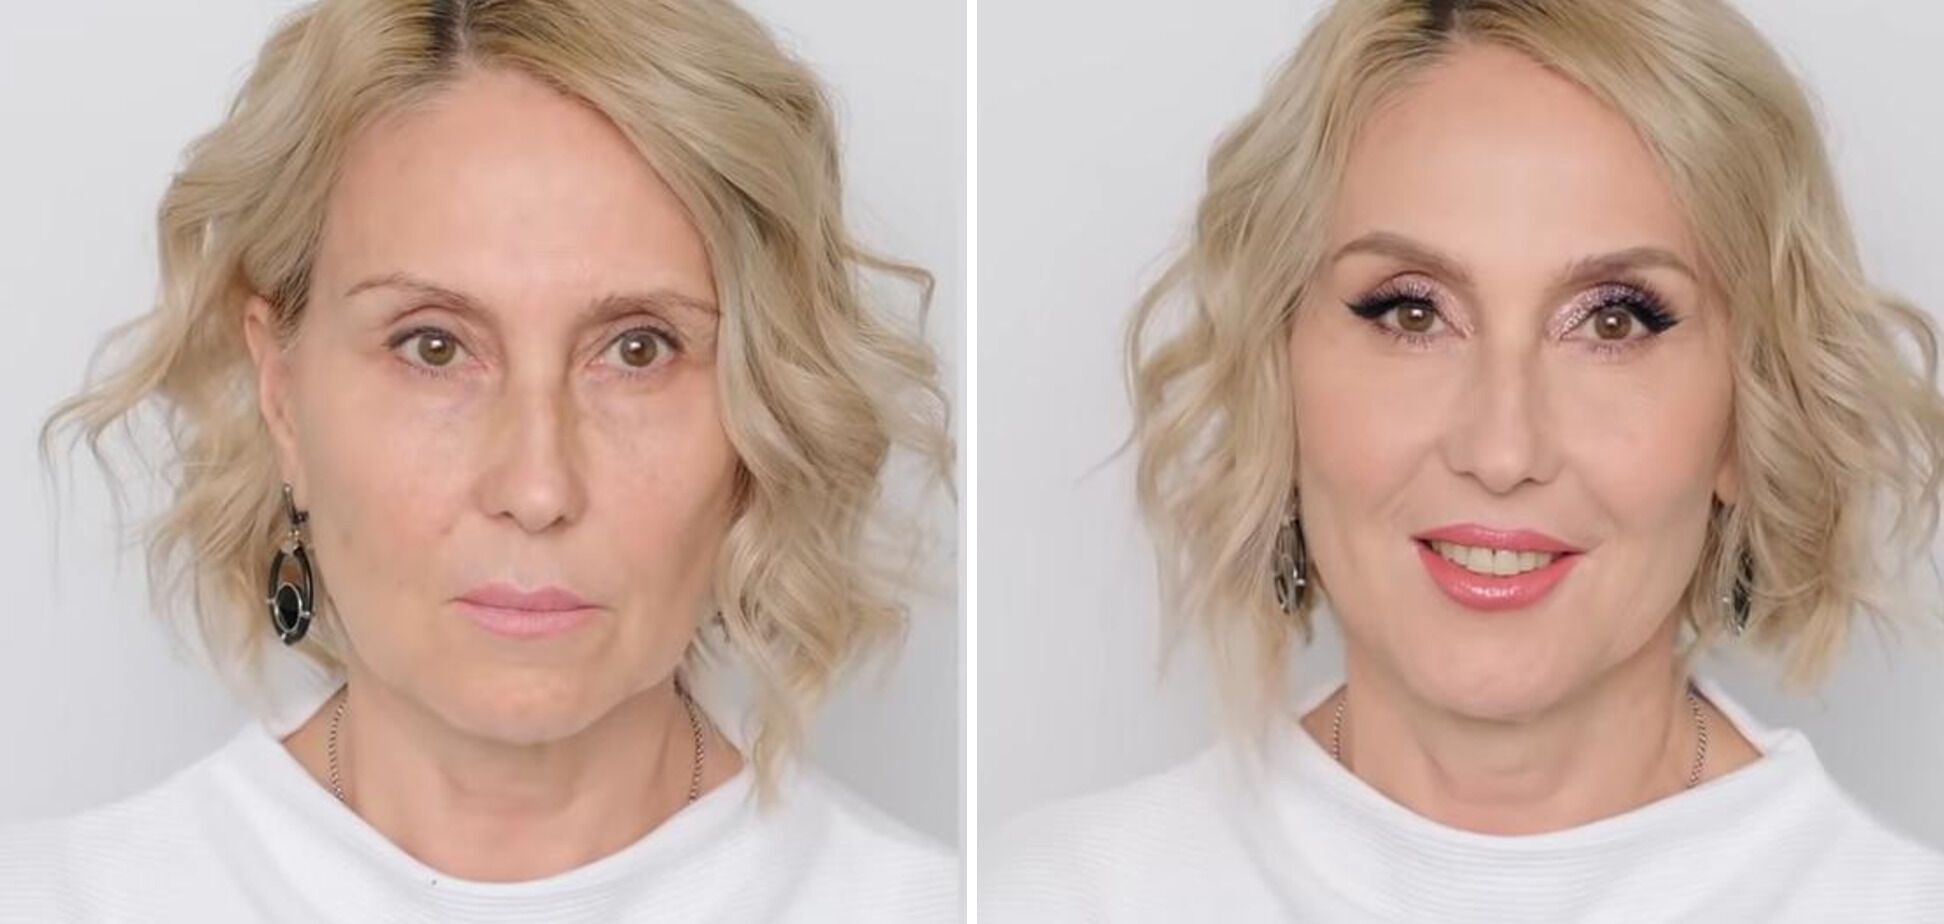 Nie rób tego! 5 błędów w makijażu po 40. roku życia, które zrujnują wszystko. Zdjęcie.